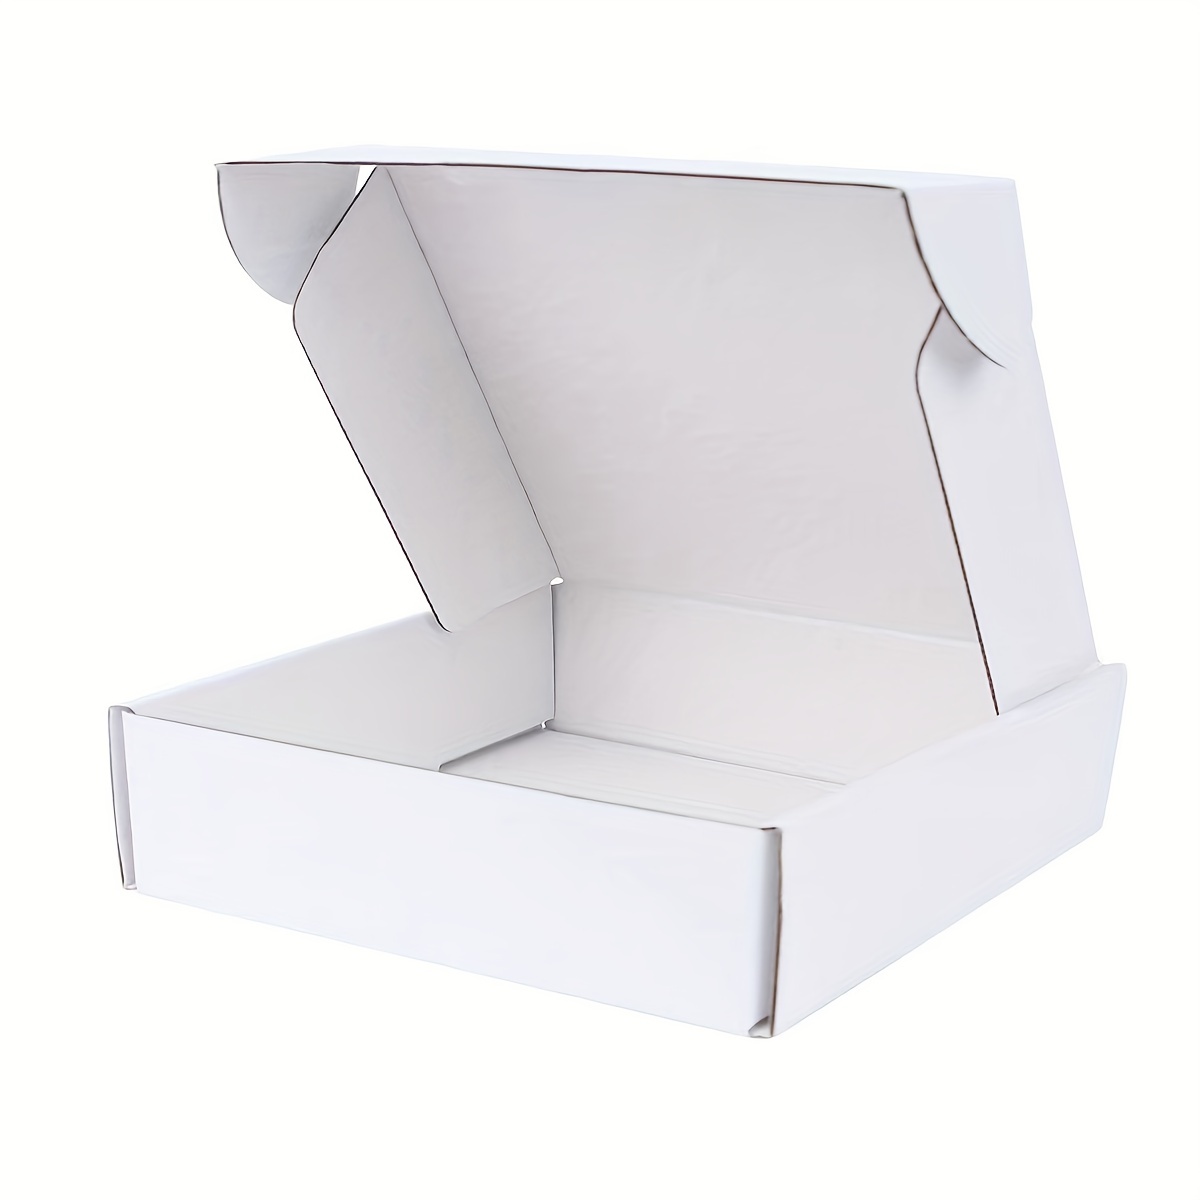 Caja Cartón Rosa para chuches – 500 gr. – Oomuombo